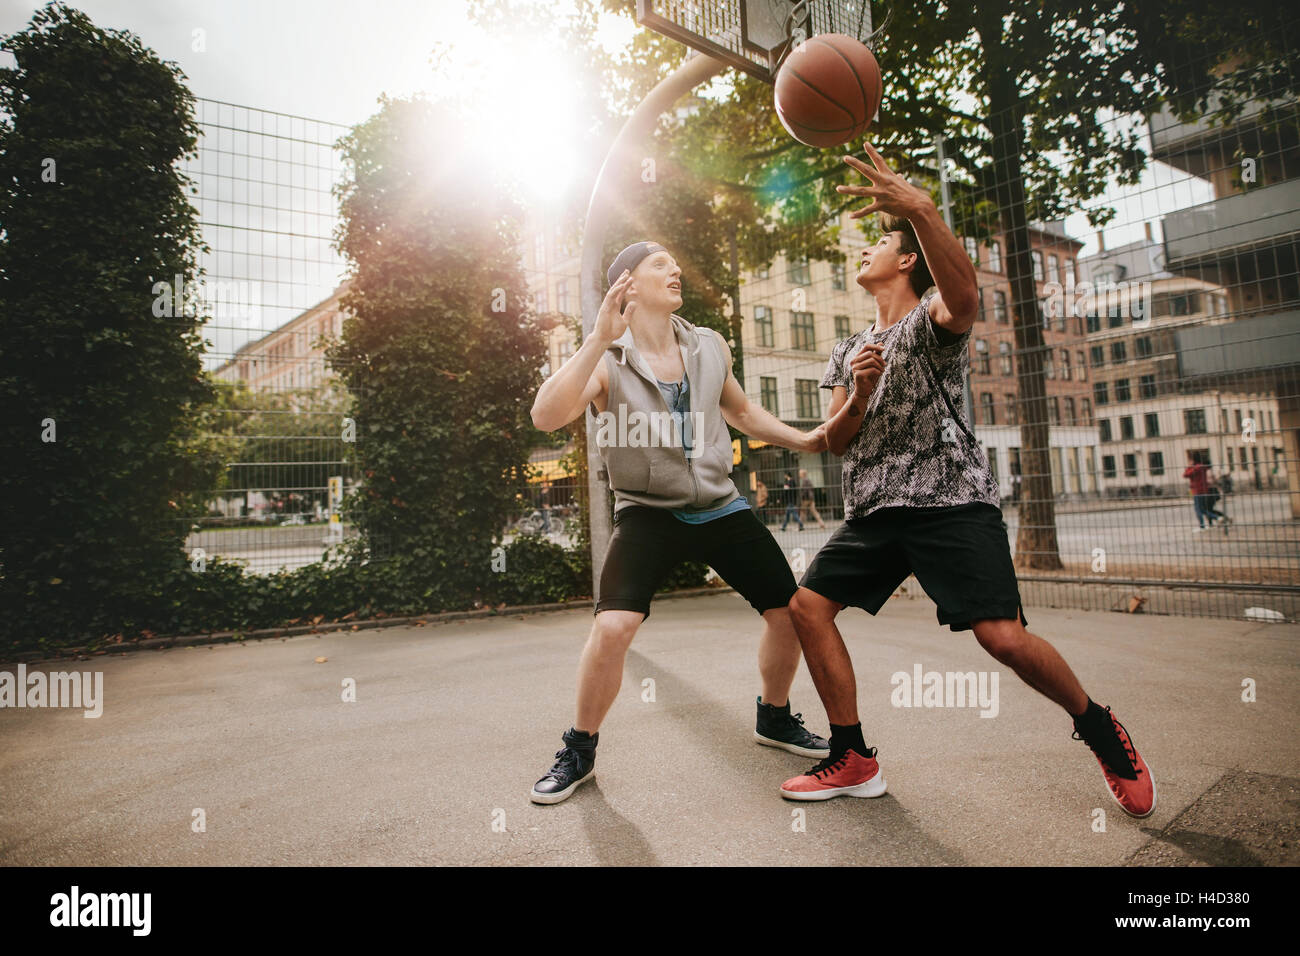 Amigos adolescentes jugando baloncesto uno contra el otro en la terraza de un tribunal. Dos hombres jóvenes jugando un partido de baloncesto. Foto de stock